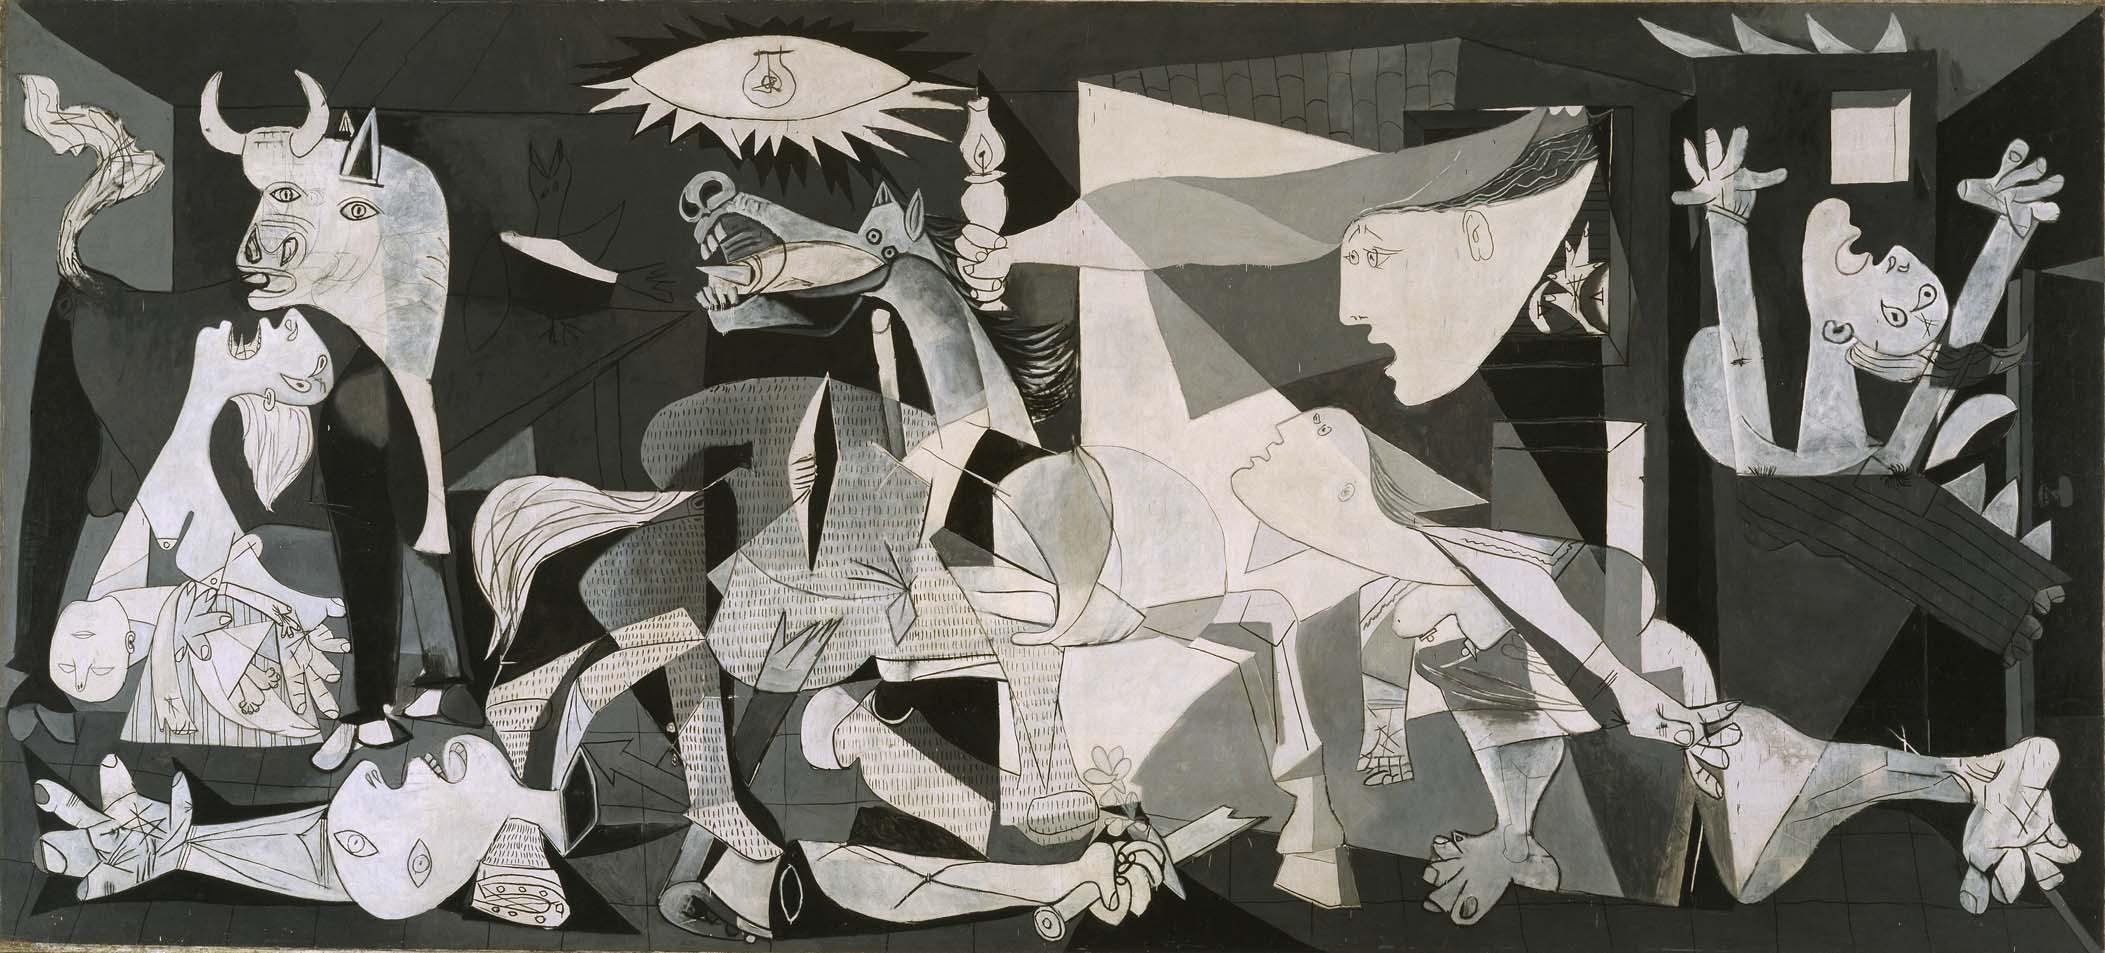 格爾尼卡 by Pablo Picasso - 1937 - 349 cm × 776 cm 